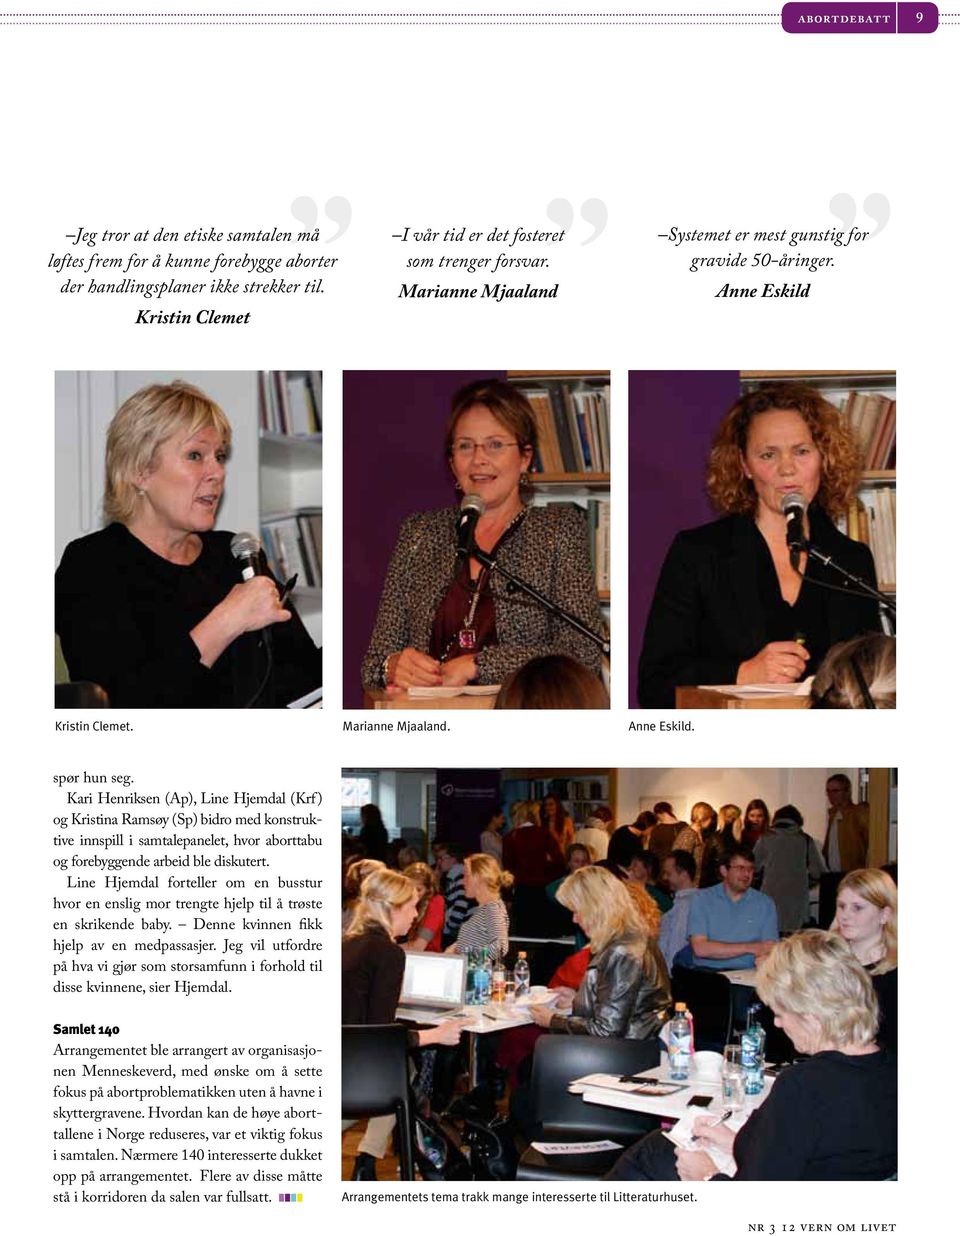 Kari Henriksen (Ap), Line Hjemdal (Krf) og Kristina Ramsøy (Sp) bidro med konstruktive innspill i samtalepanelet, hvor aborttabu og forebyggende arbeid ble diskutert.